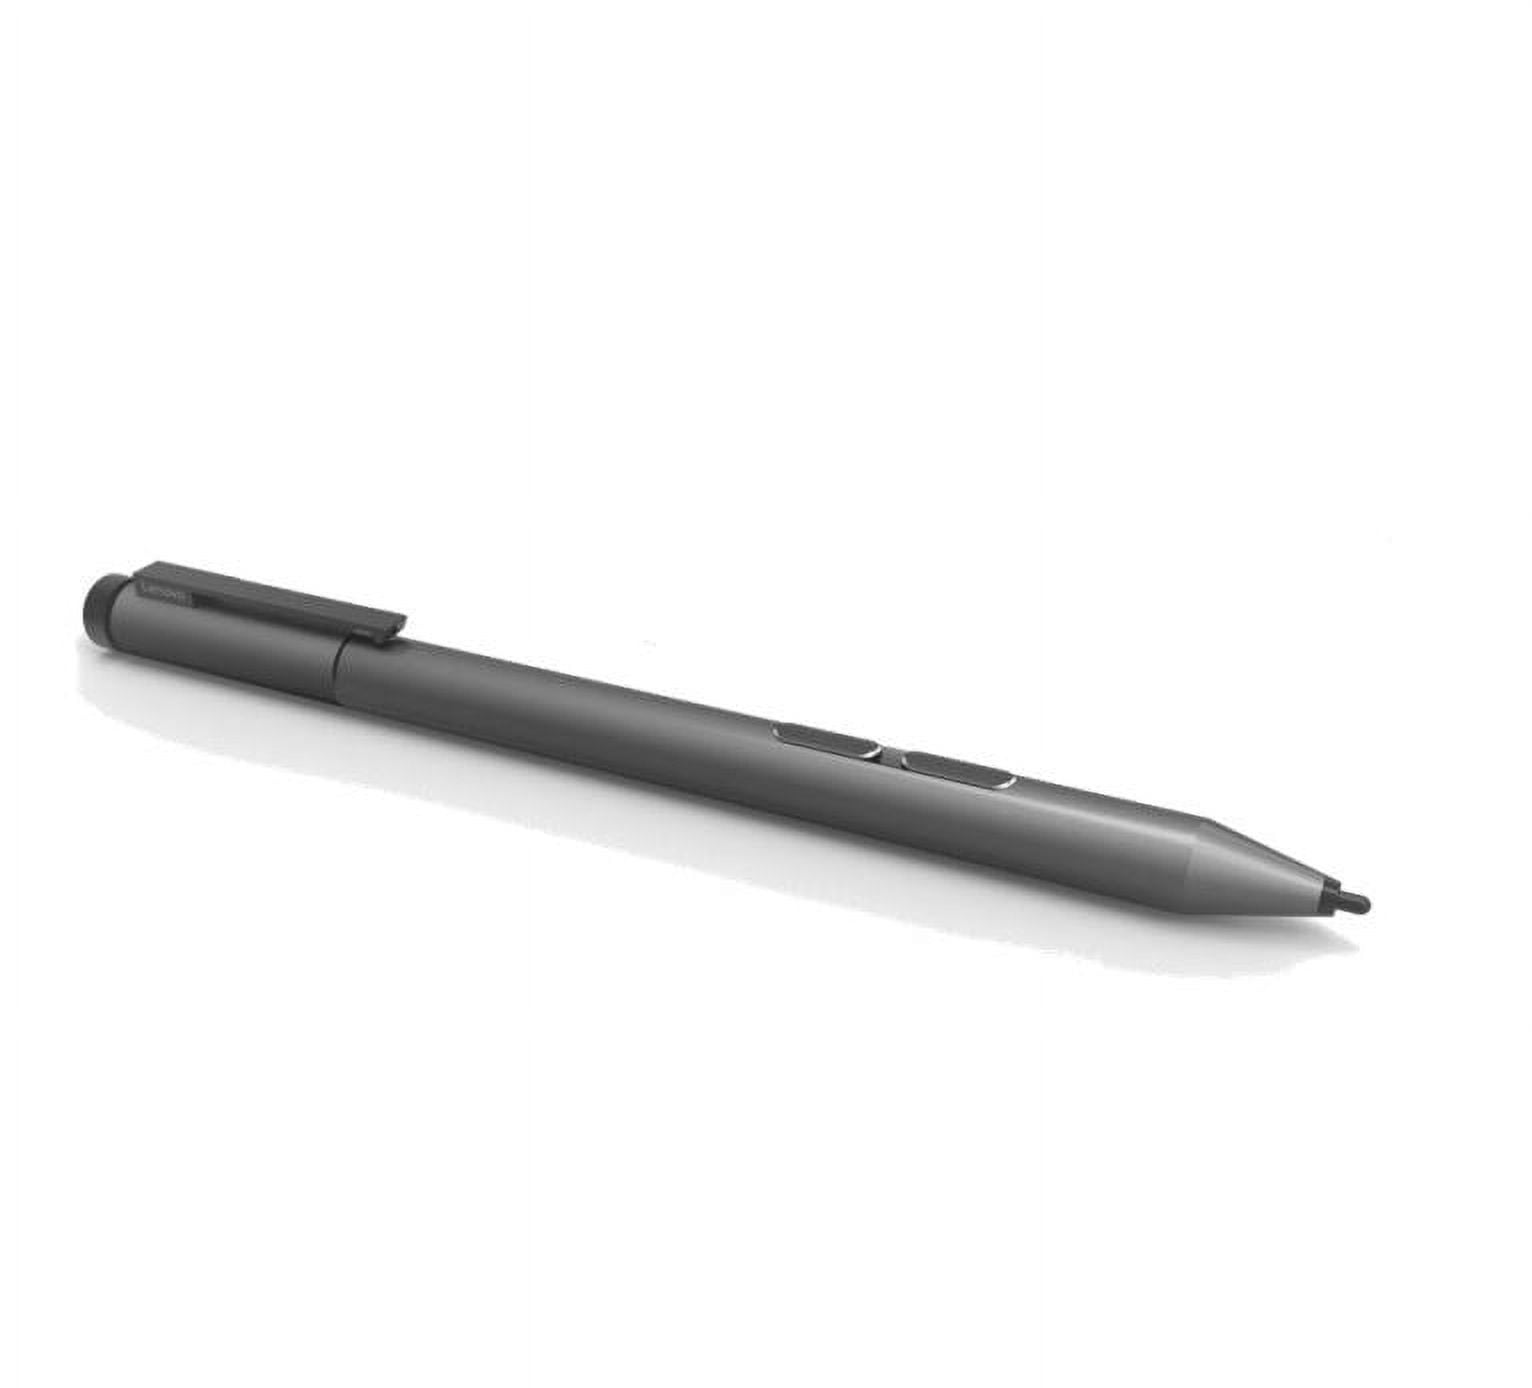 Lenovo announces new active stylus to take on Surface Pen - MSPoweruser